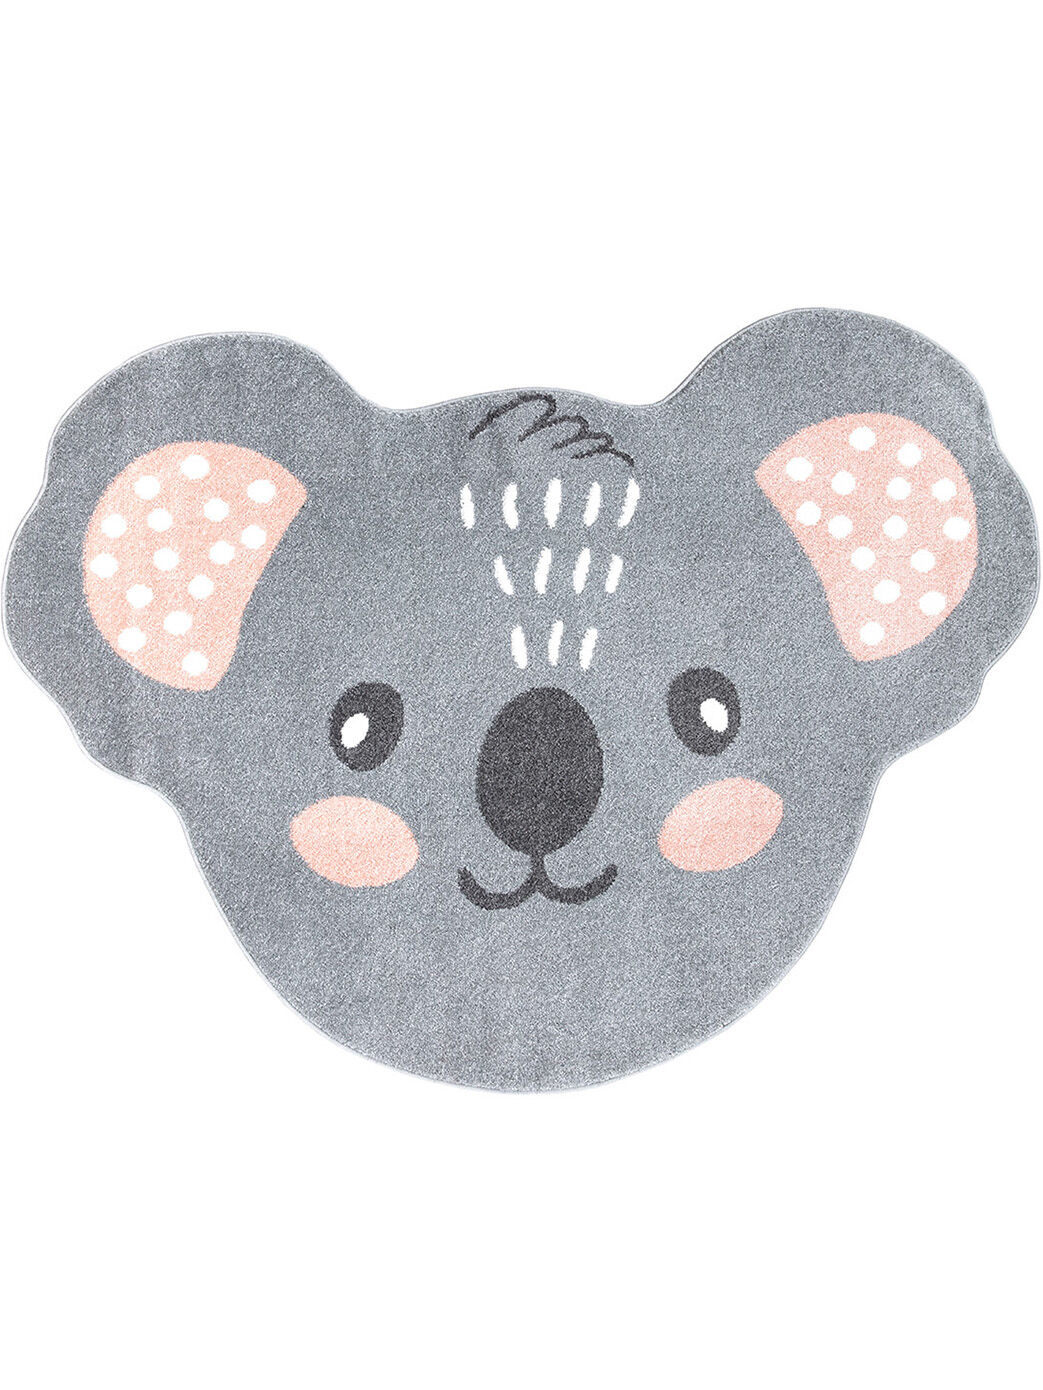 Kinderteppich Koala Grau 120x160 1